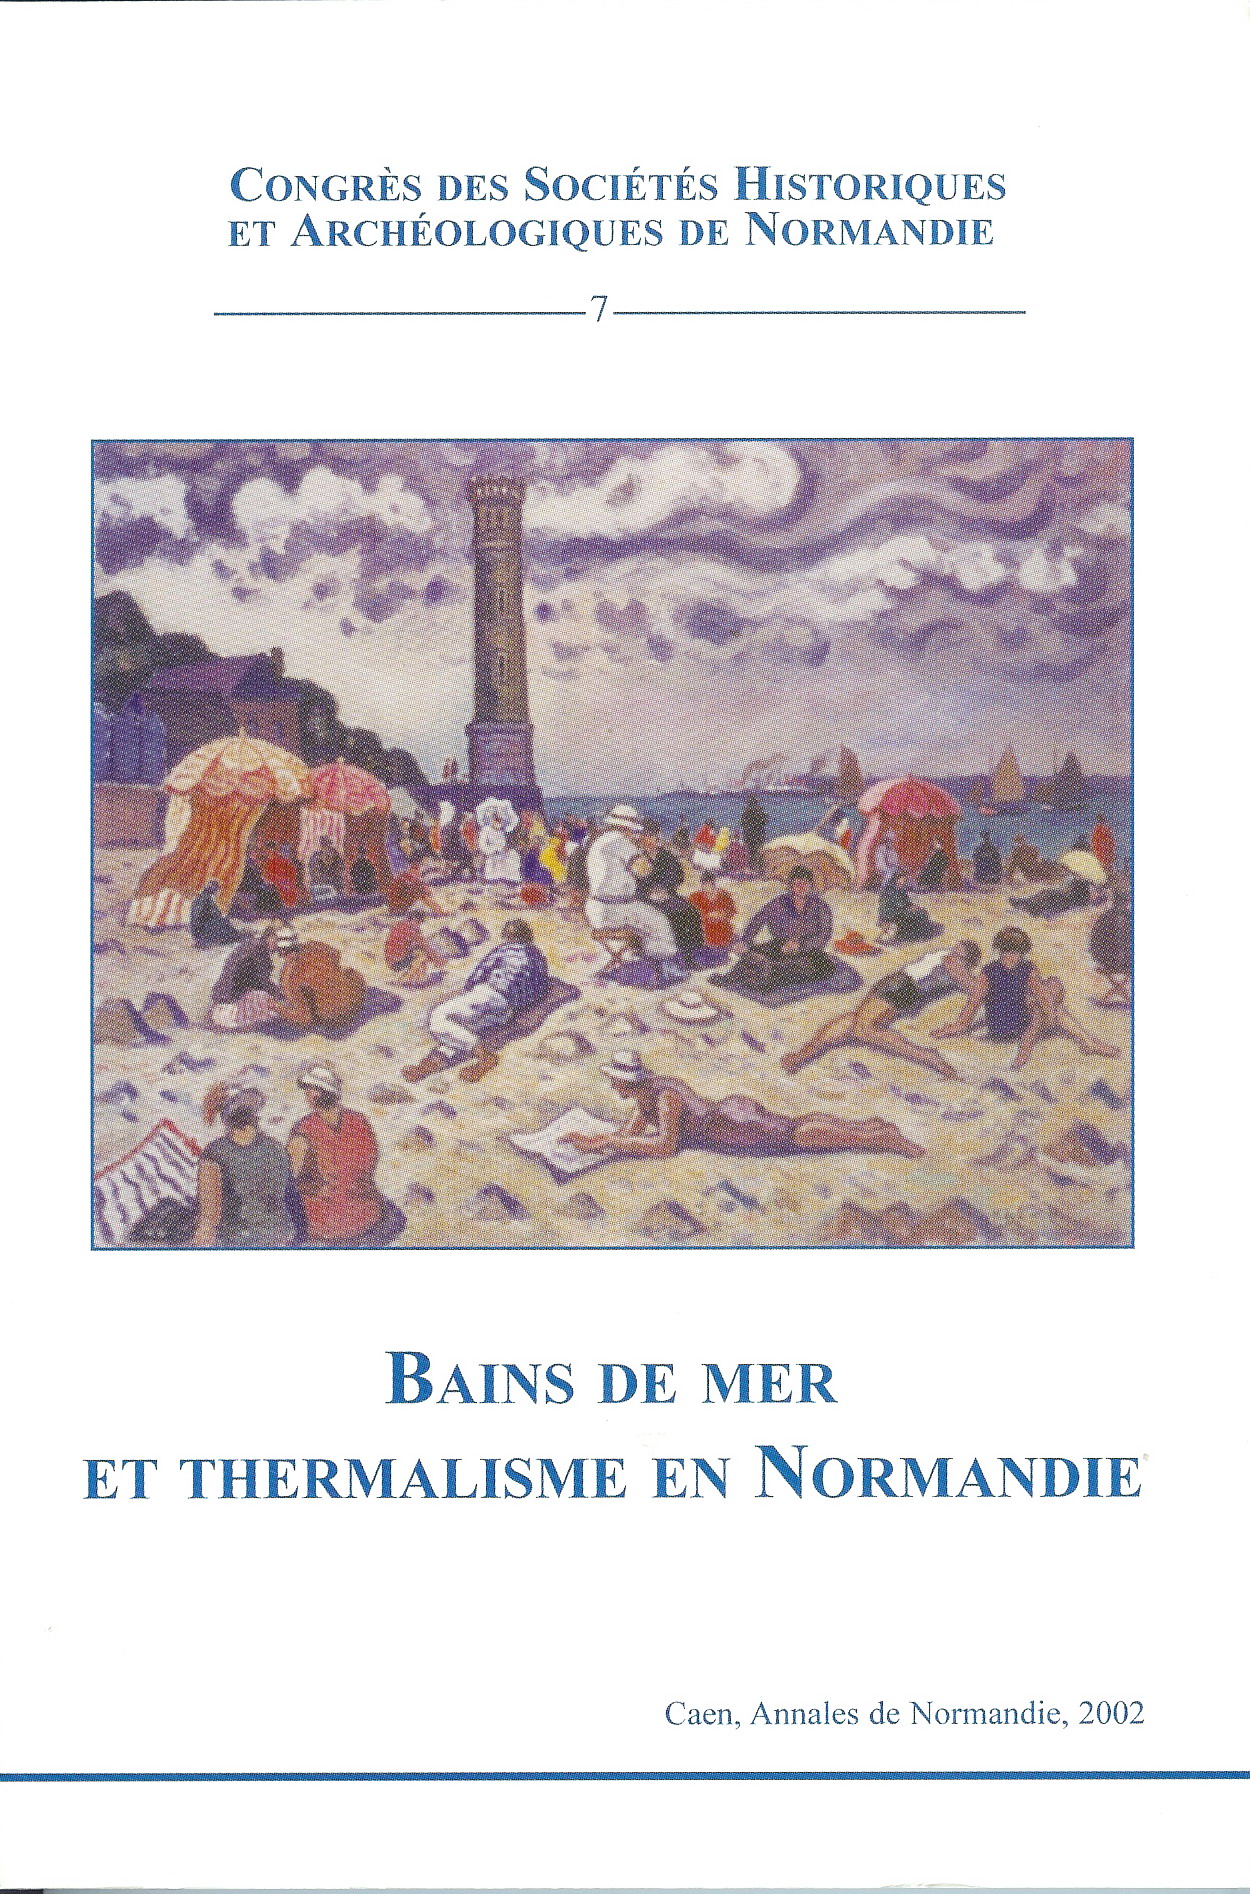 Bains de mer et thermalisme en Normandie